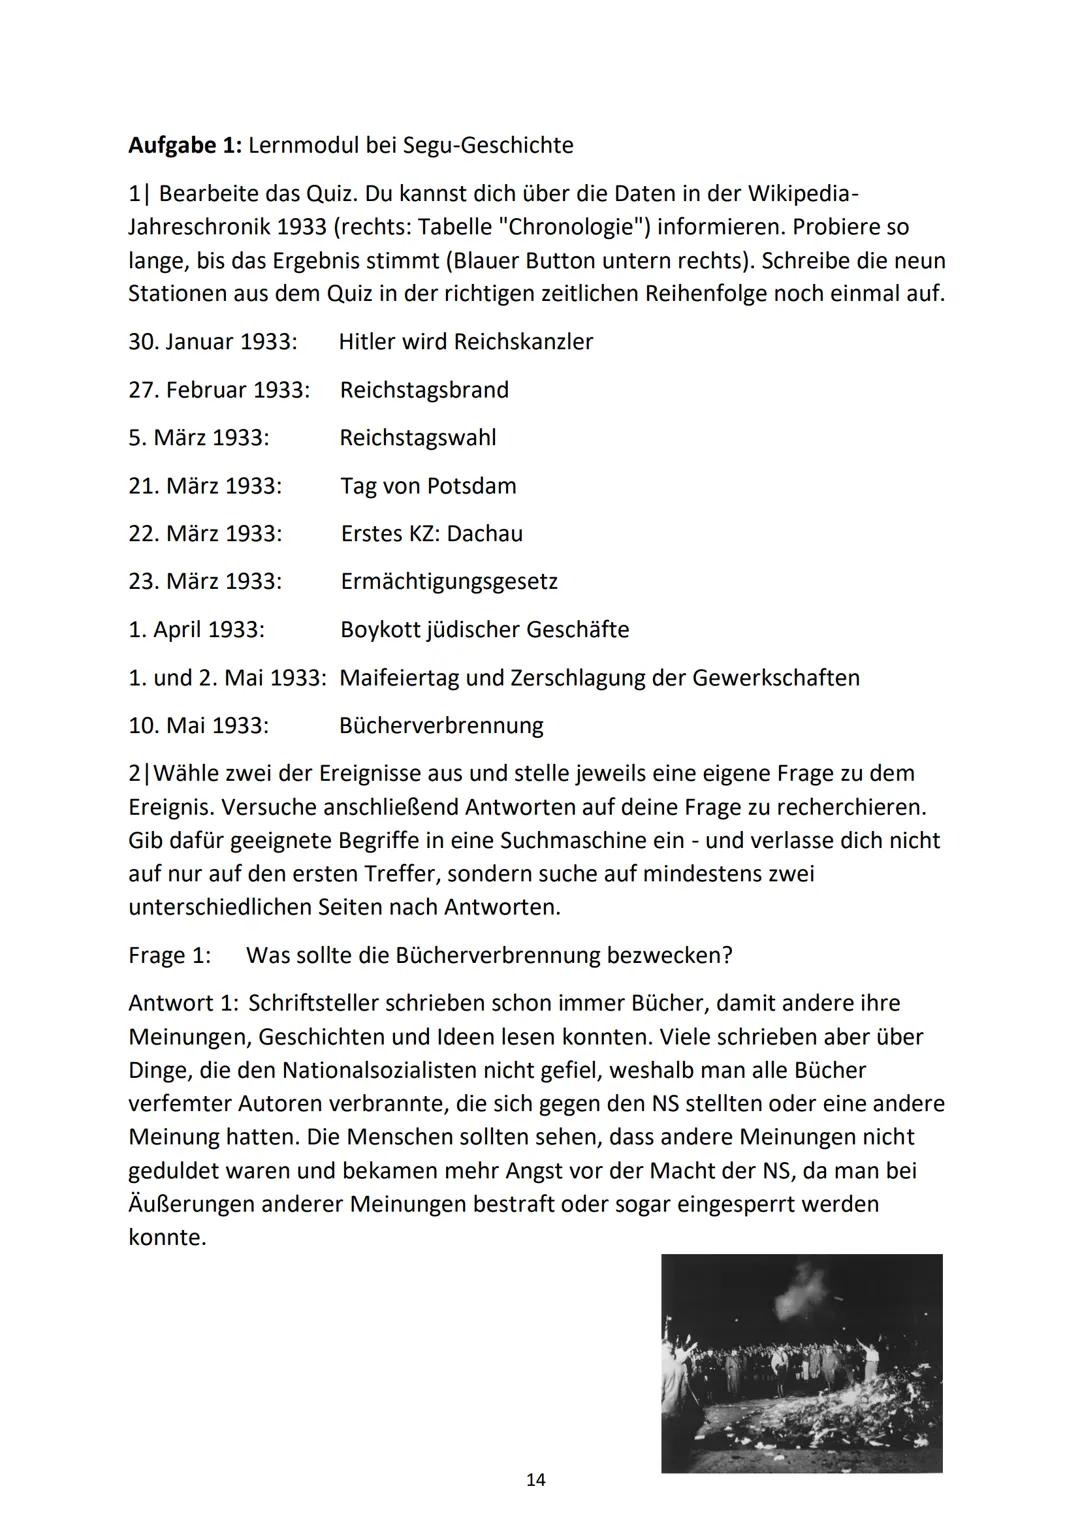 Nationalsozialismus im
Portfolio Inhaltsverzeichnis
Was weiß ich über den Nationalsozialismus?.
Station 1: Errichtung der Diktatur 1933/34.
